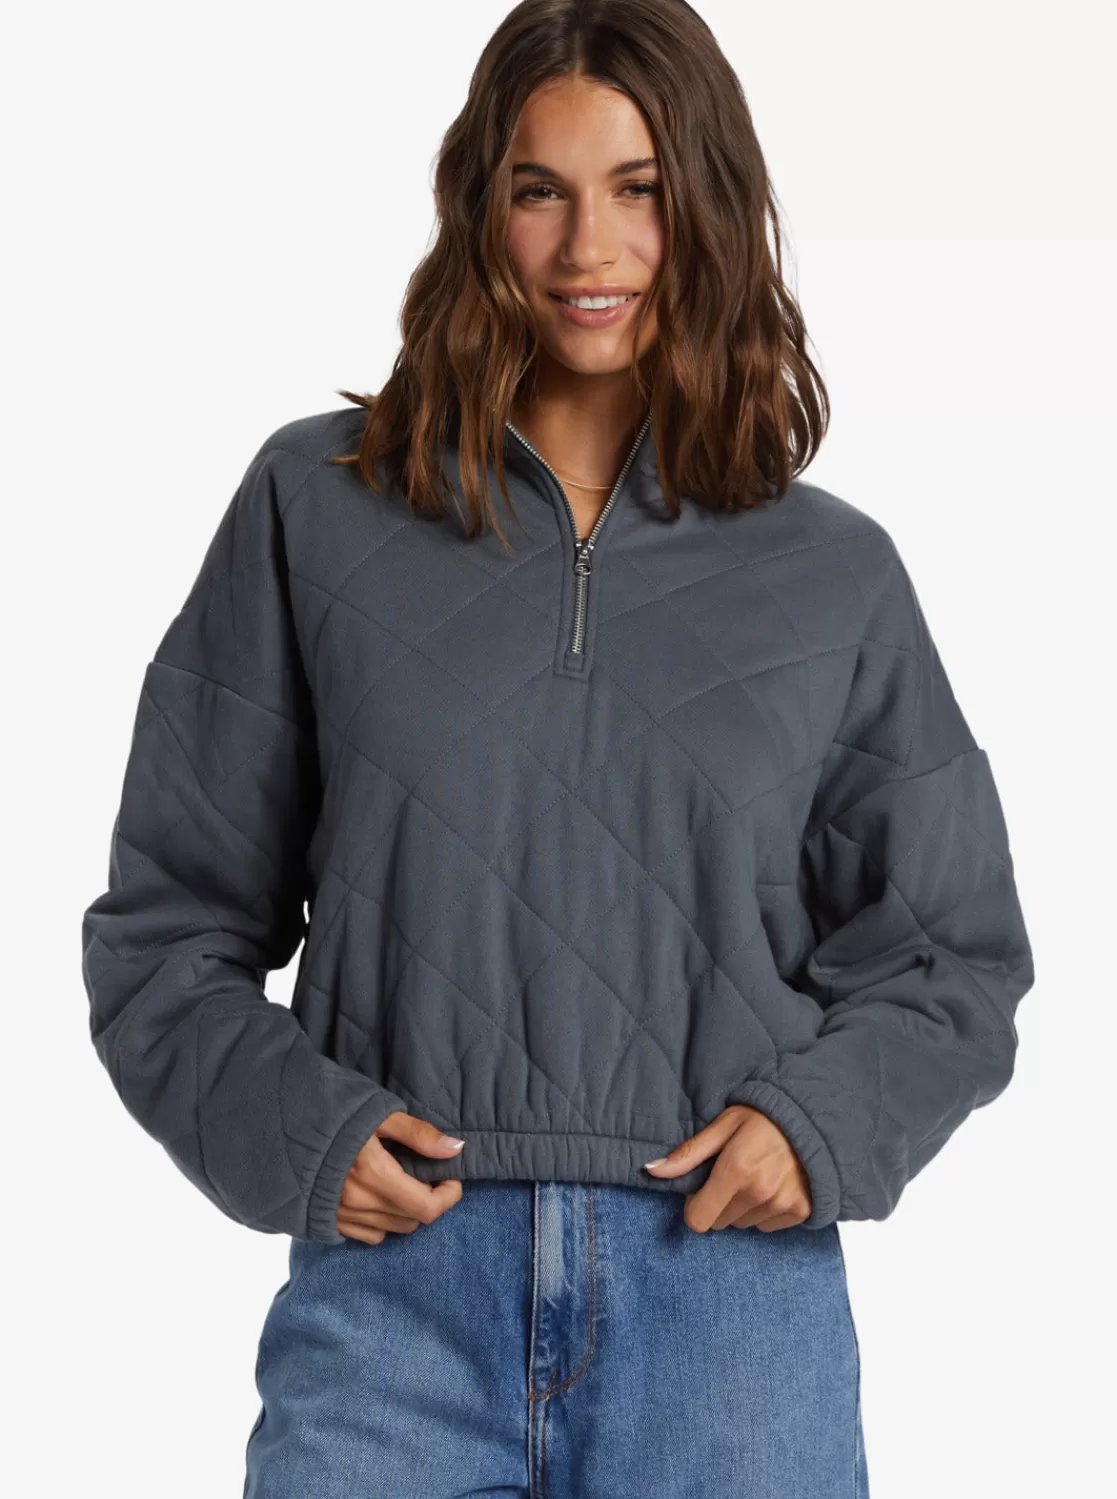 Bonfire Babe Quilted Fleece Half-Zip Sweatshirt-ROXY Best Sale